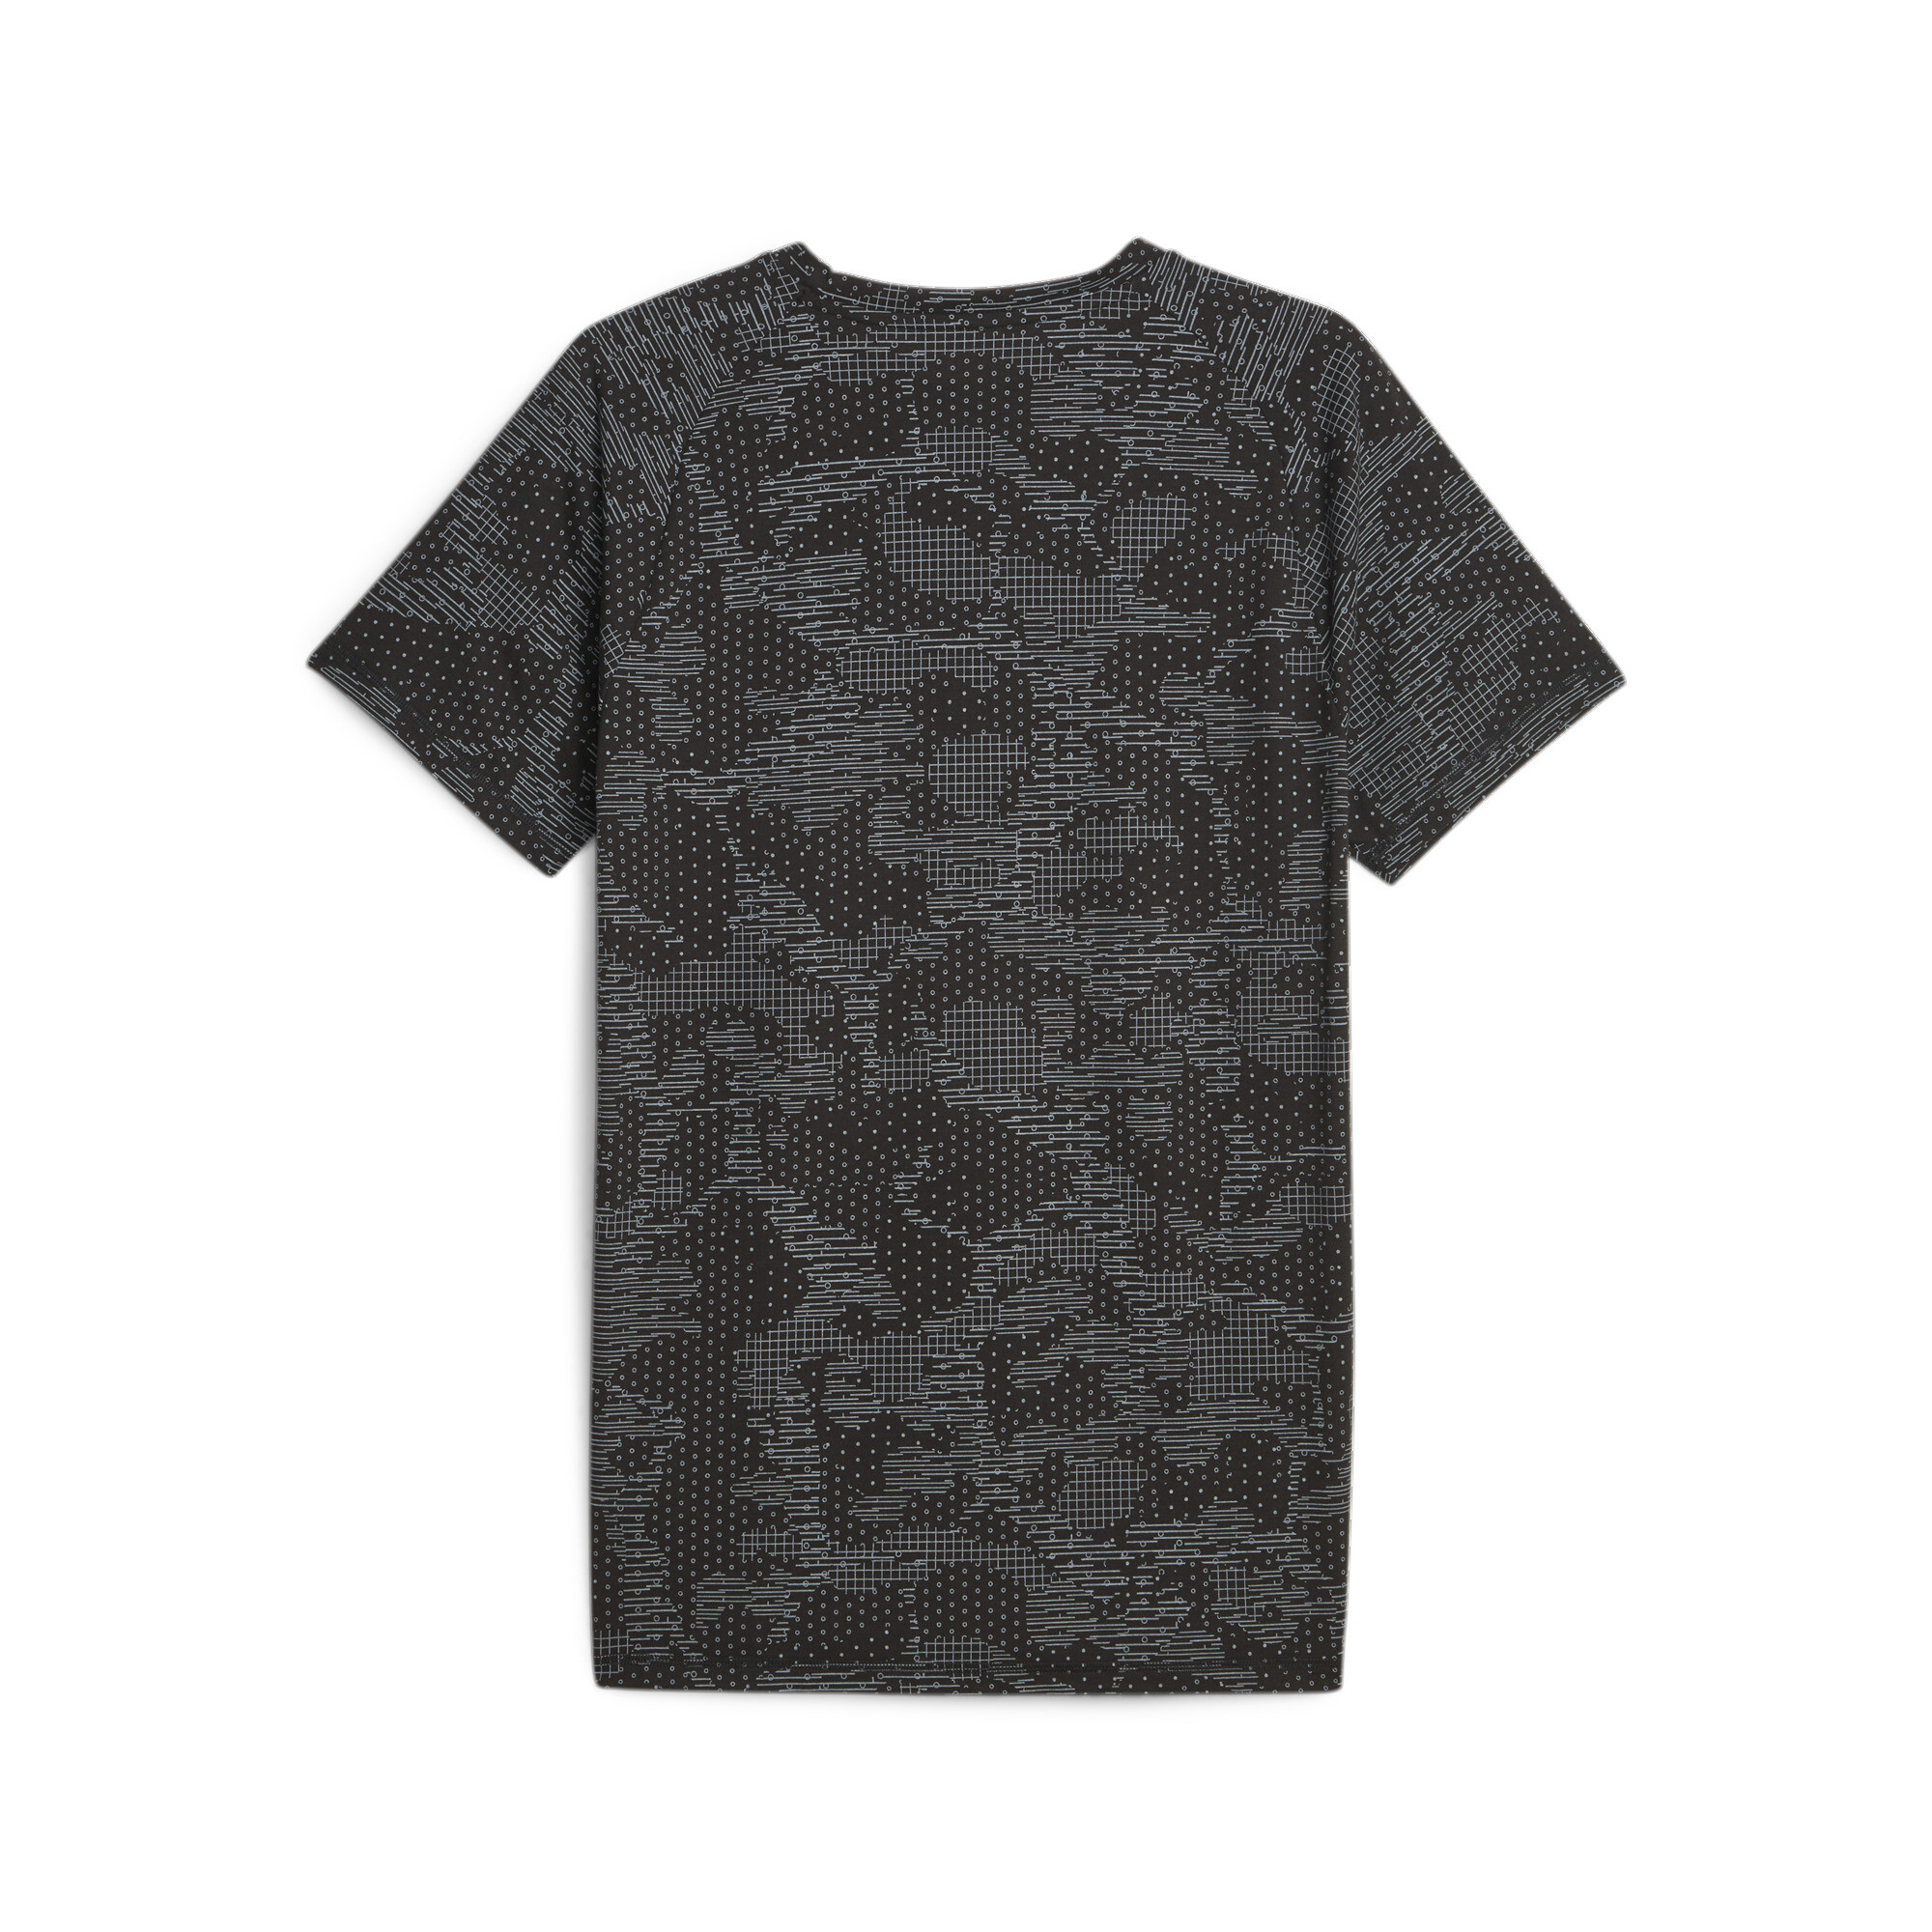 Men's PUMA Evostripe T-Shirt In Black, Size XS